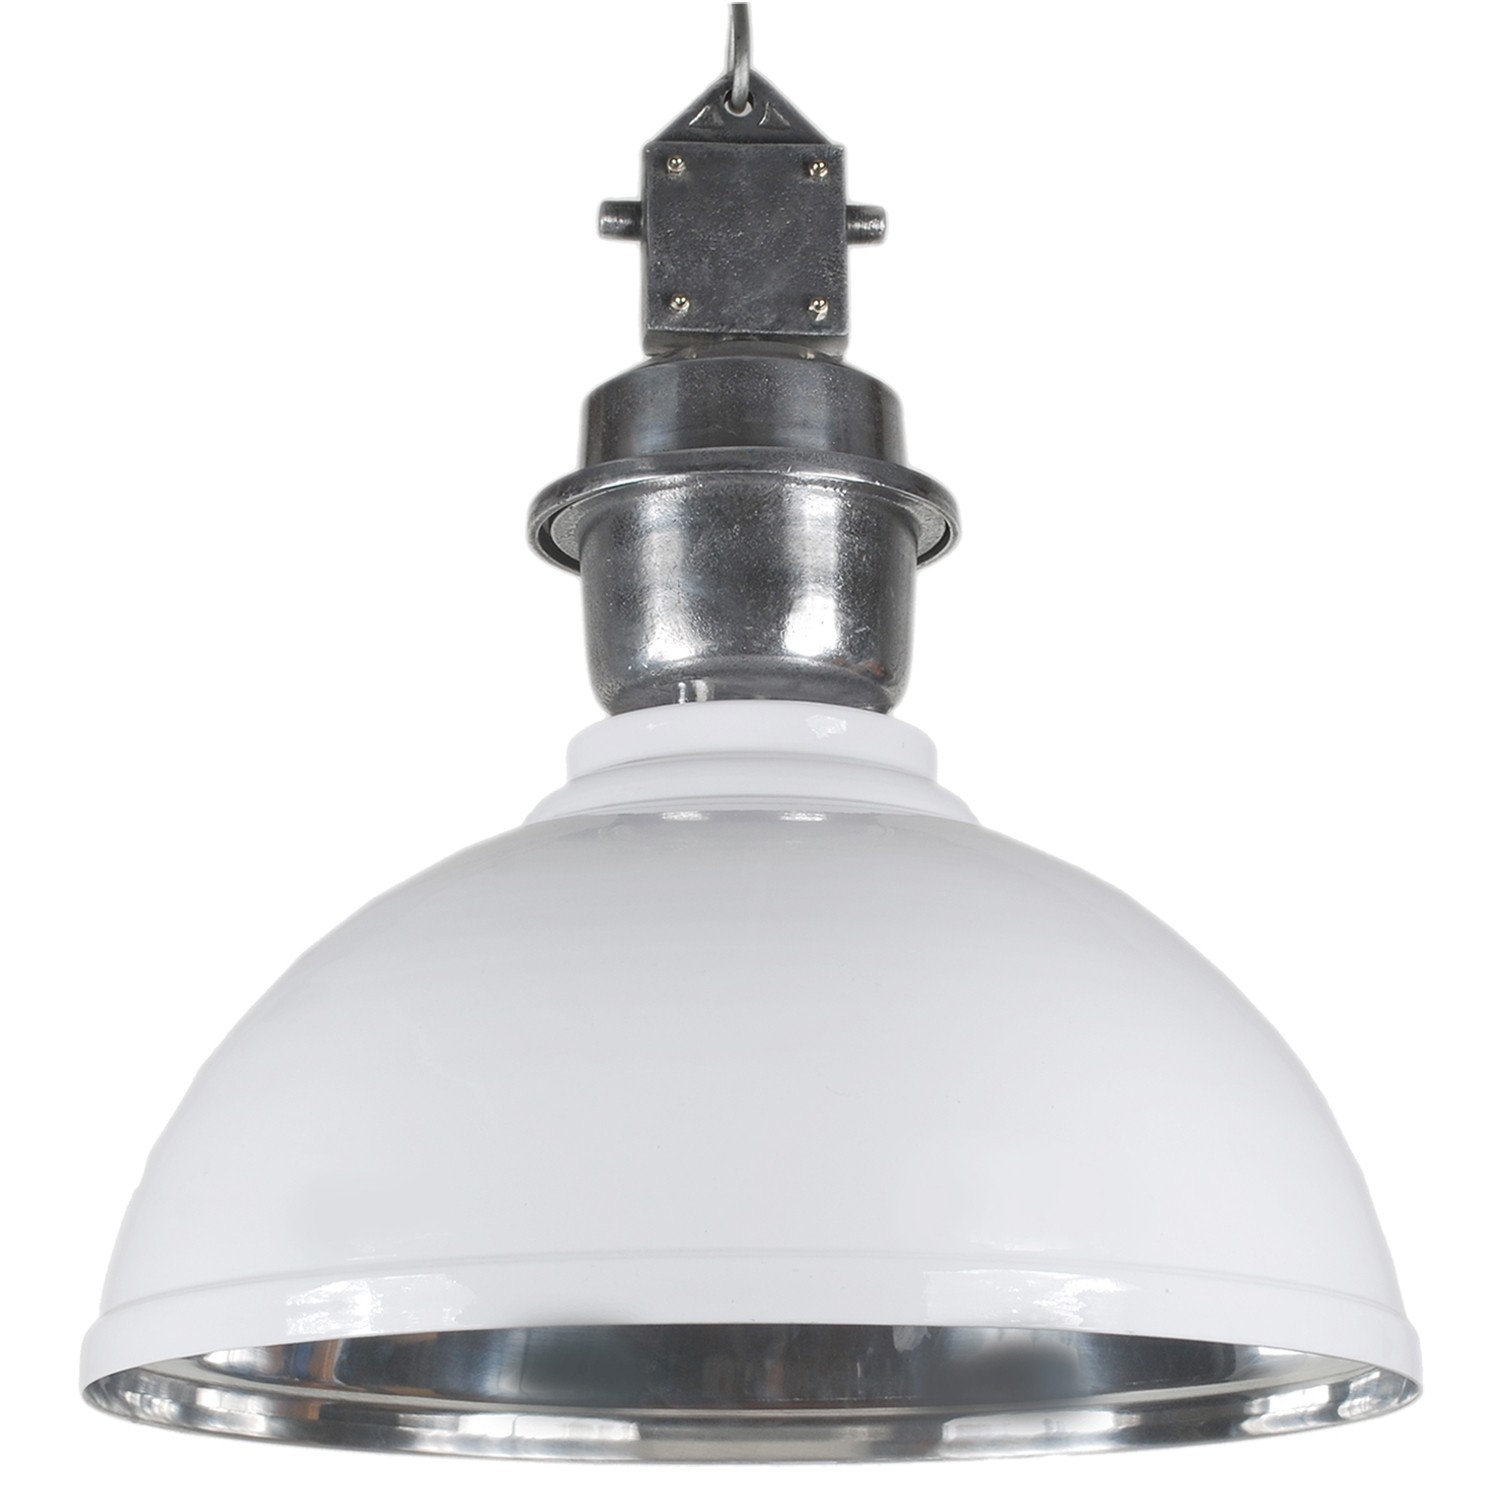 Pendelleuchte weiß - silber Industrie-Lampe, Hängelampe weiß Industrie, Durchmesser 52 cm